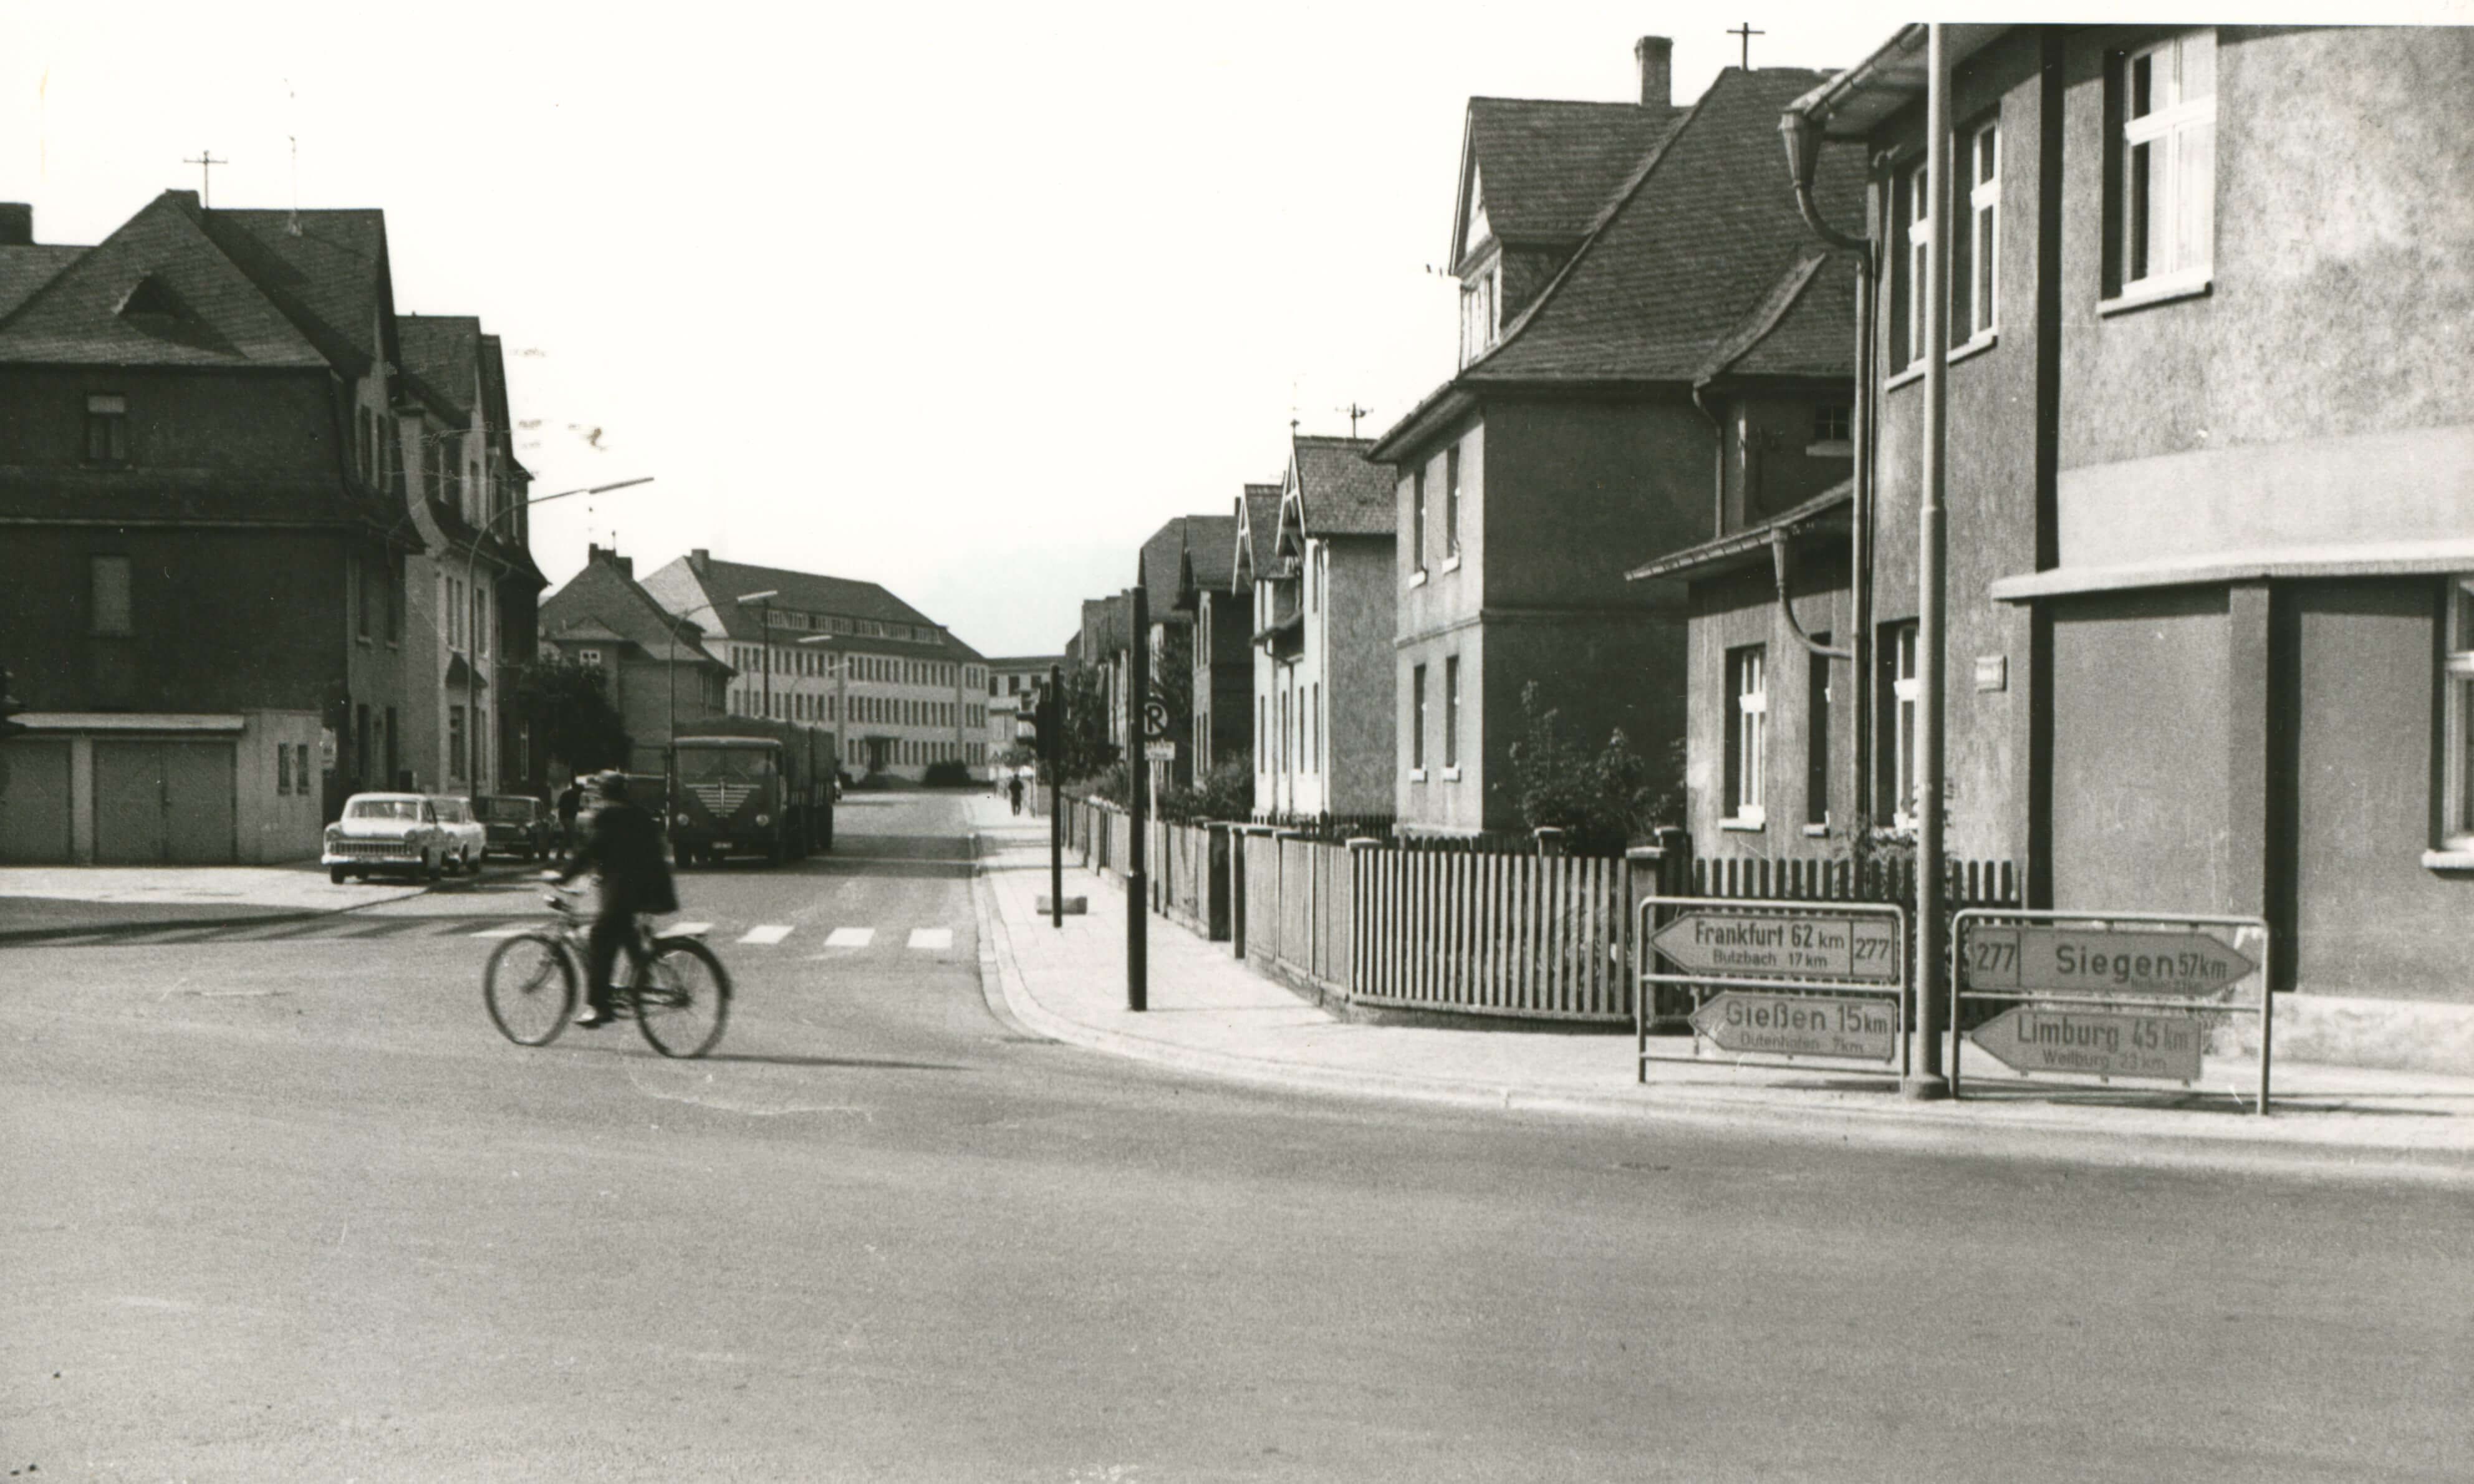 Ein historisches Schwarz-Weiß-Foto, das eine Straßenecke mit Häuserreihen und einem vorbeifahrenden Mann auf einem Fahrrad zeigt.